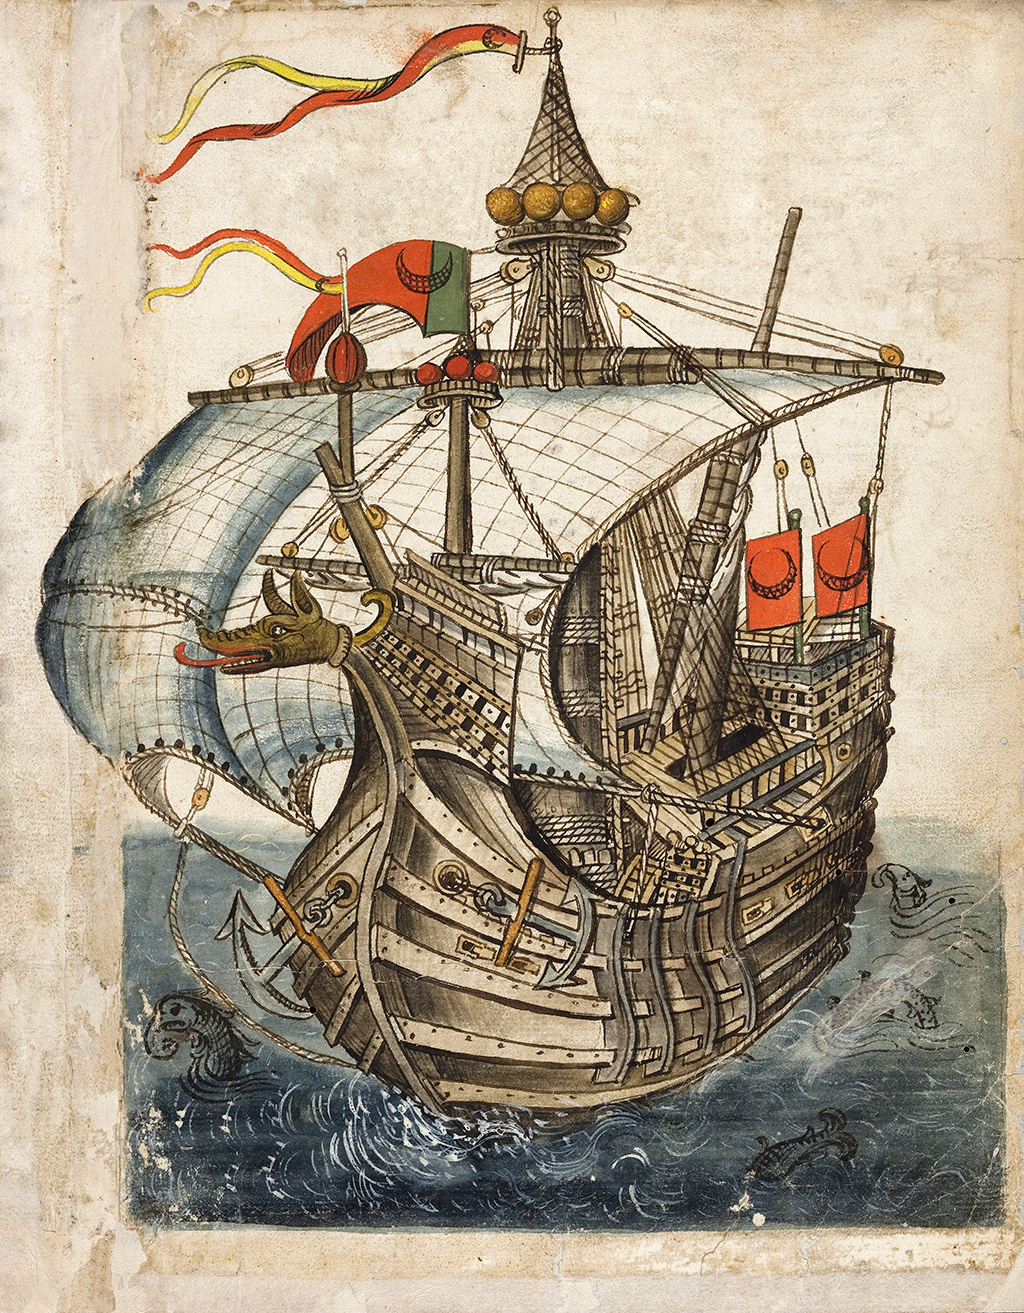 Die farbige Federzeichnung aus dem Reisebericht von Konrad von Grünenberg über seine Reise ins Heilige Land zeigt ein türkisches Schiff aus der Zeit um 1487.